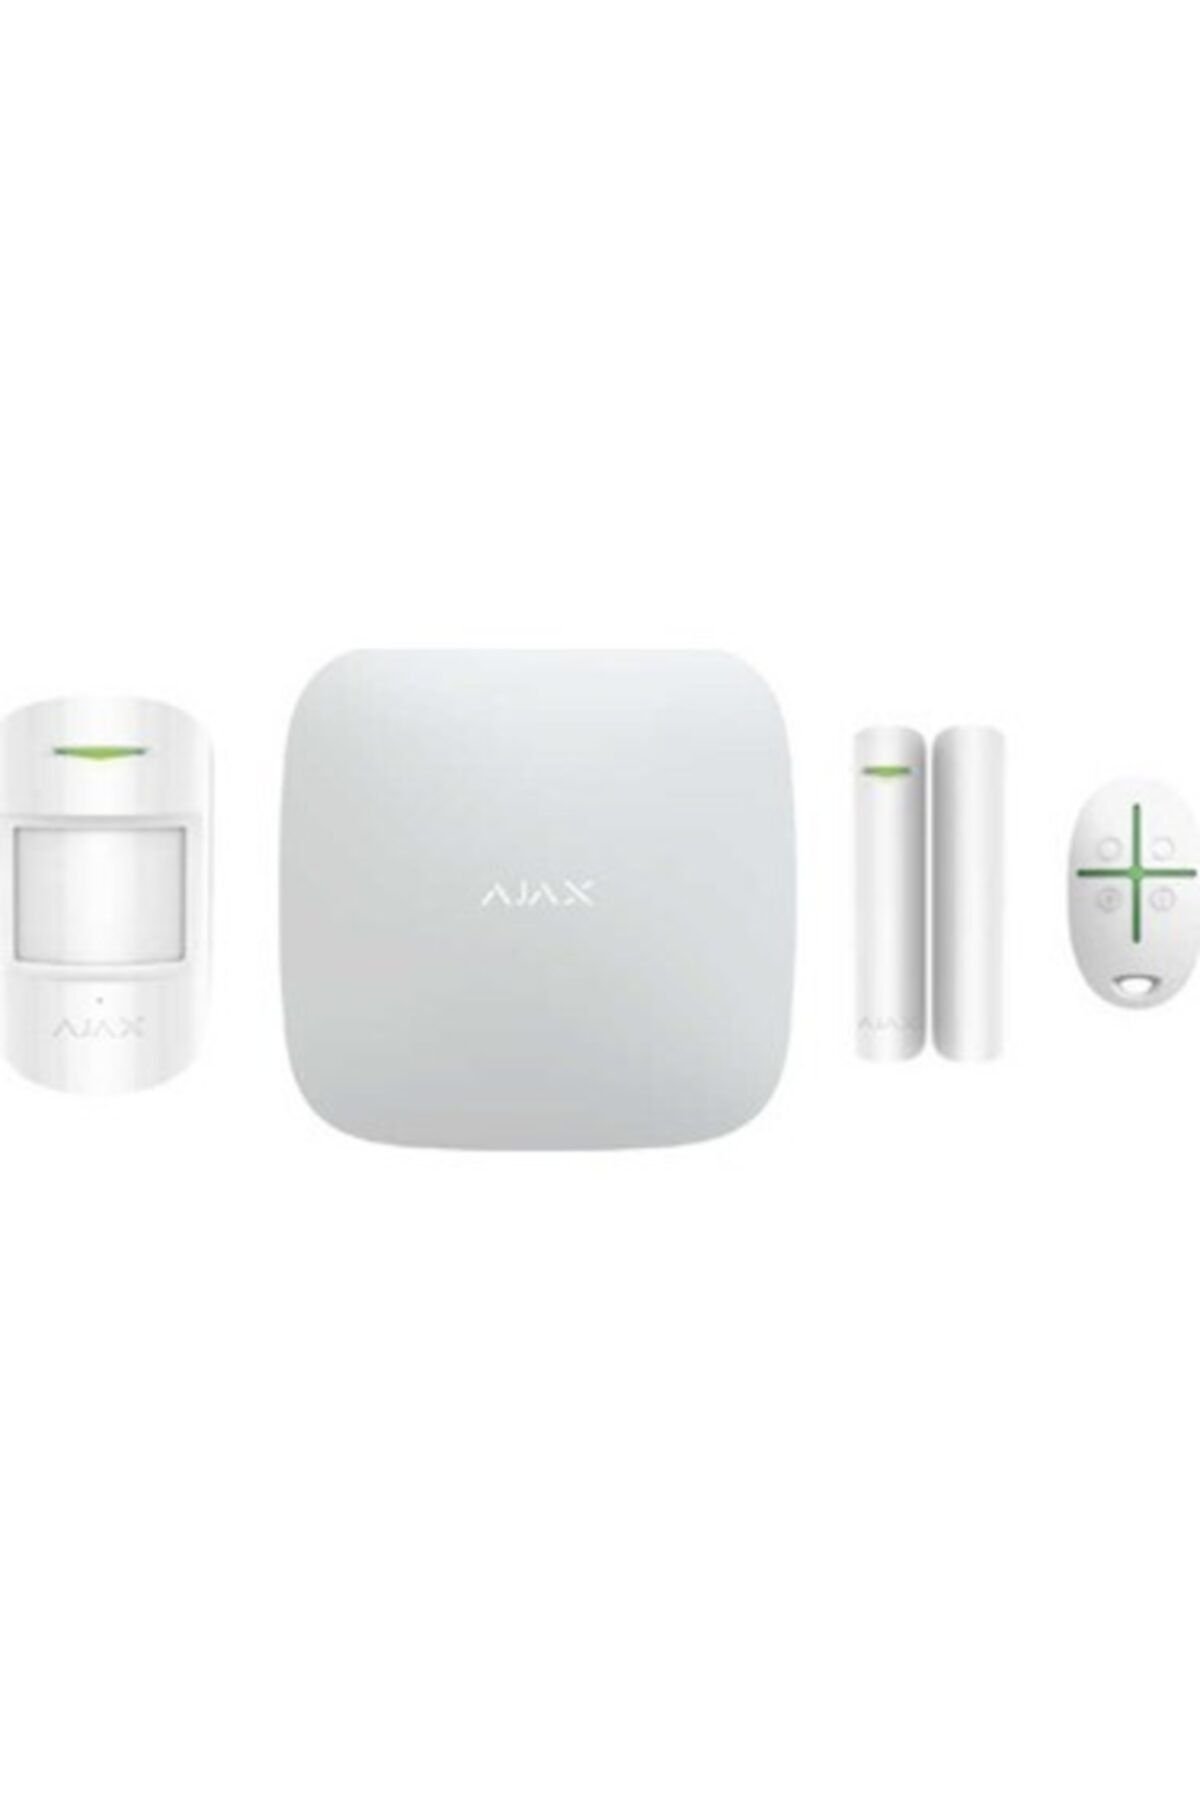 Ajax Hub Kit / Starterkithub - Kablosuz Alarm Kiti